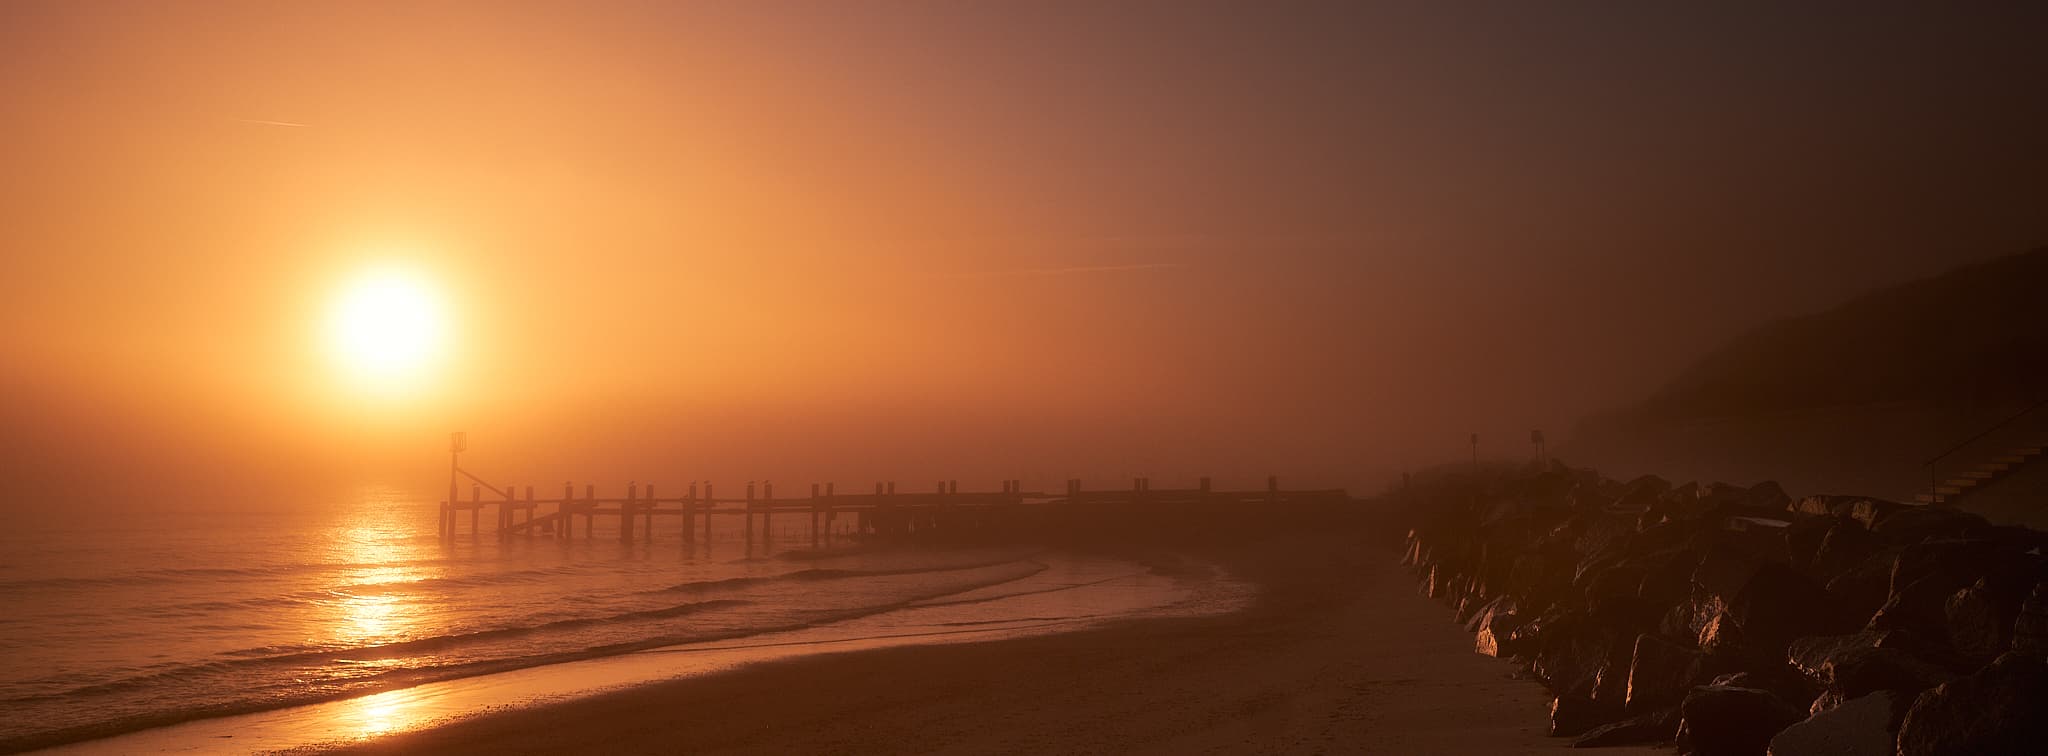 beach sunrise on a foggy morning